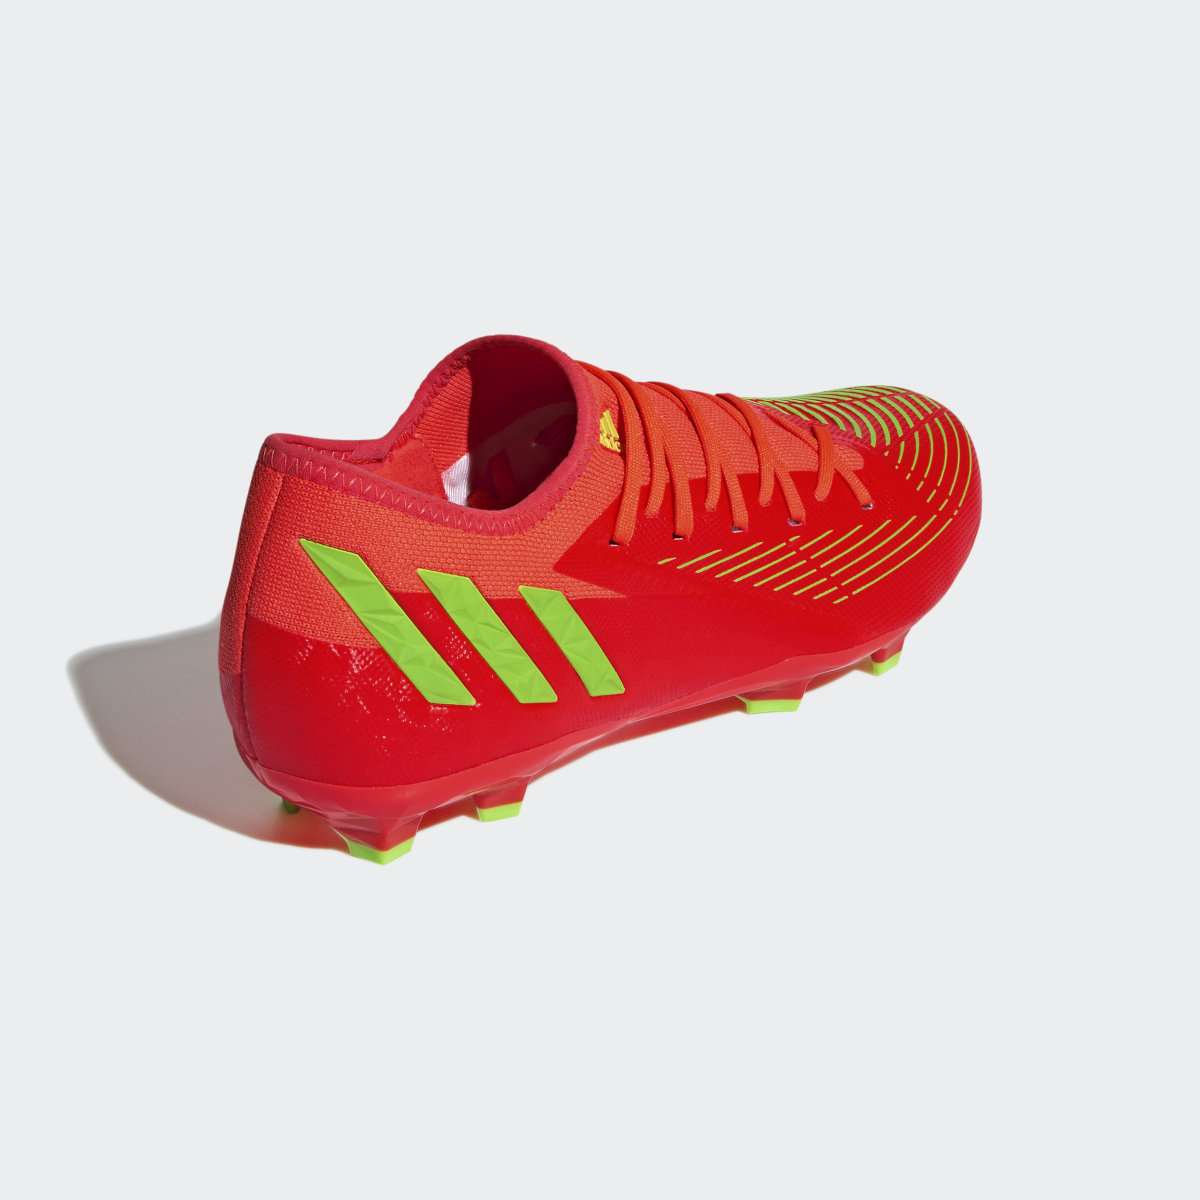 Adidas Botas de Futebol Predator Edge.3 – Piso firme. 6